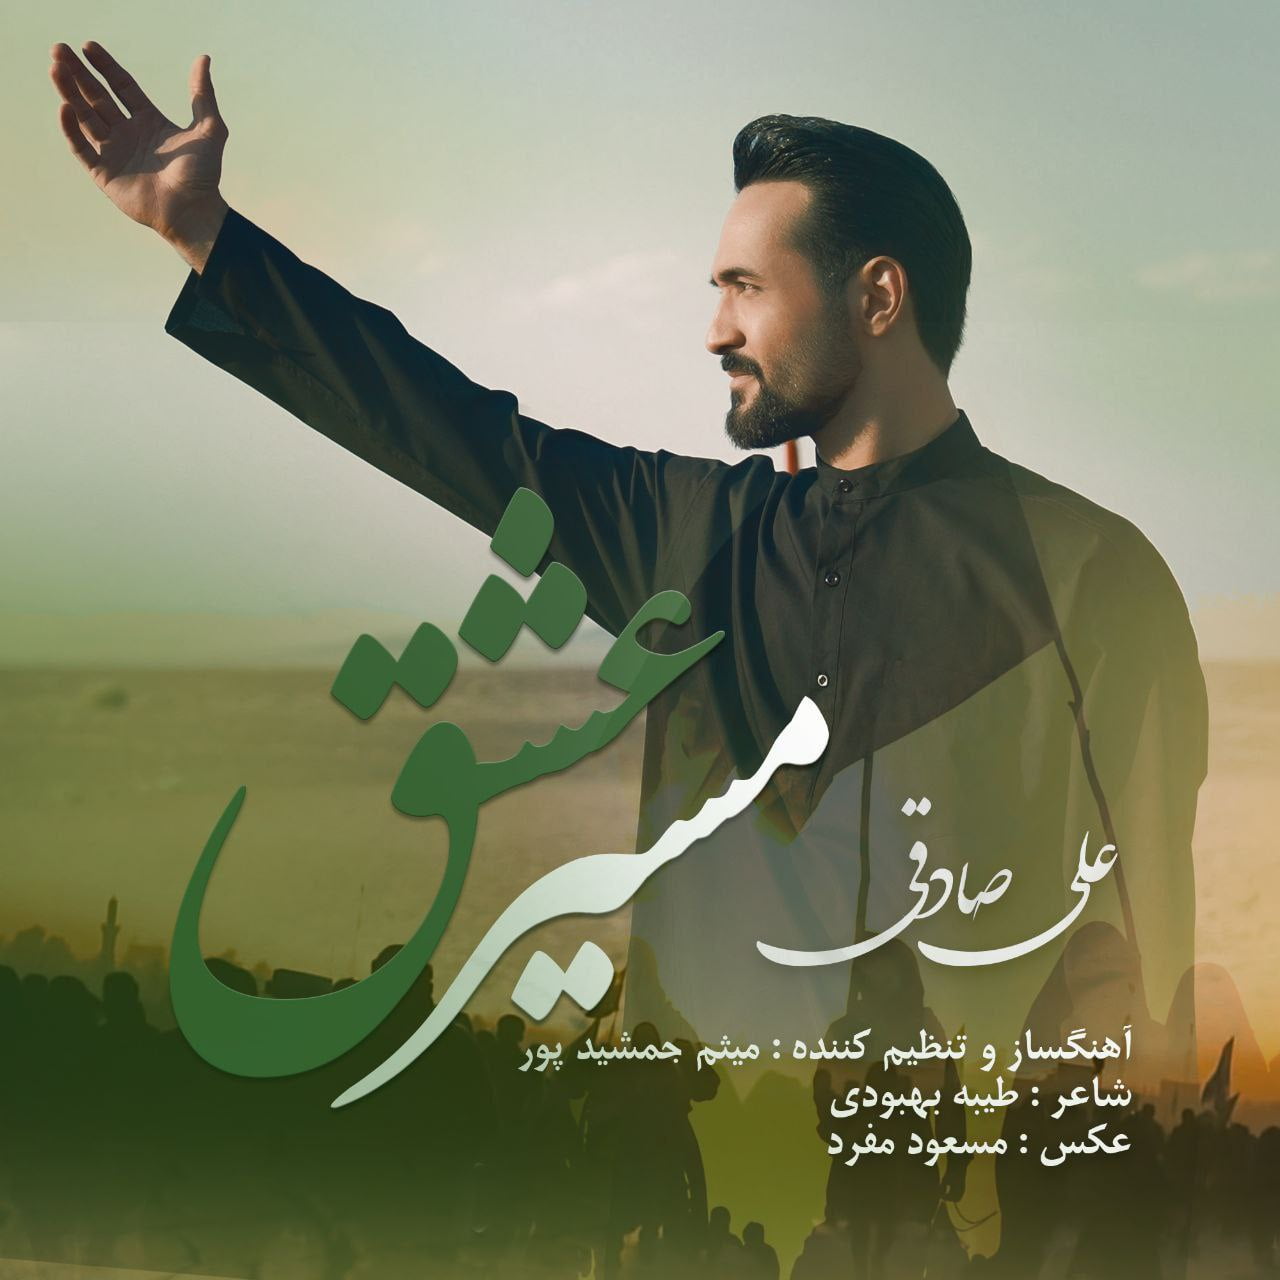 دانلود آهنگ جدید علی صادقی با عنوان مسیر عشق